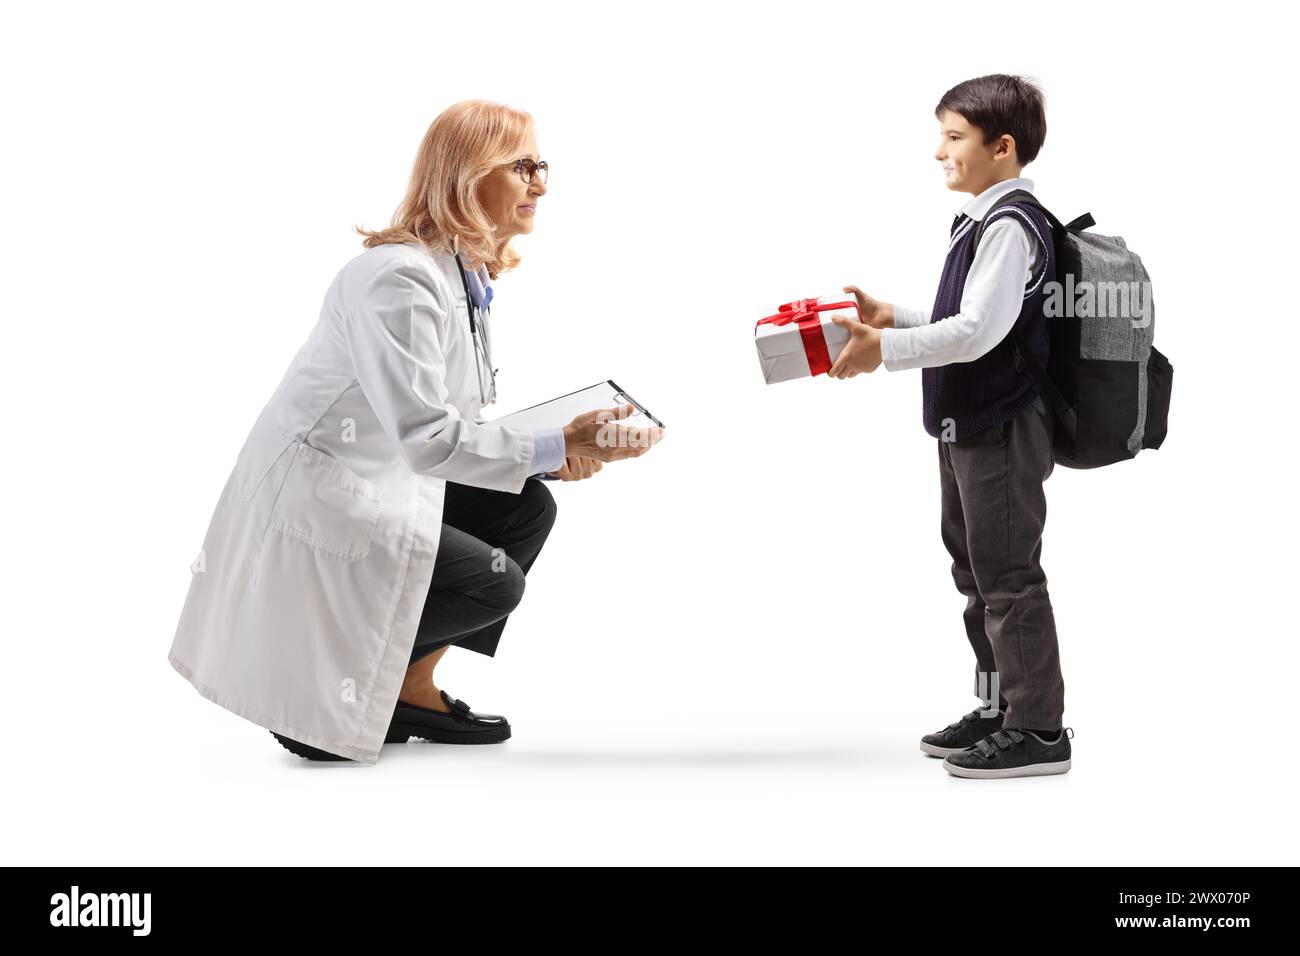 Junge, der einer Ärztin ein Geschenk gibt, isoliert auf weißem Hintergrund Stockfoto